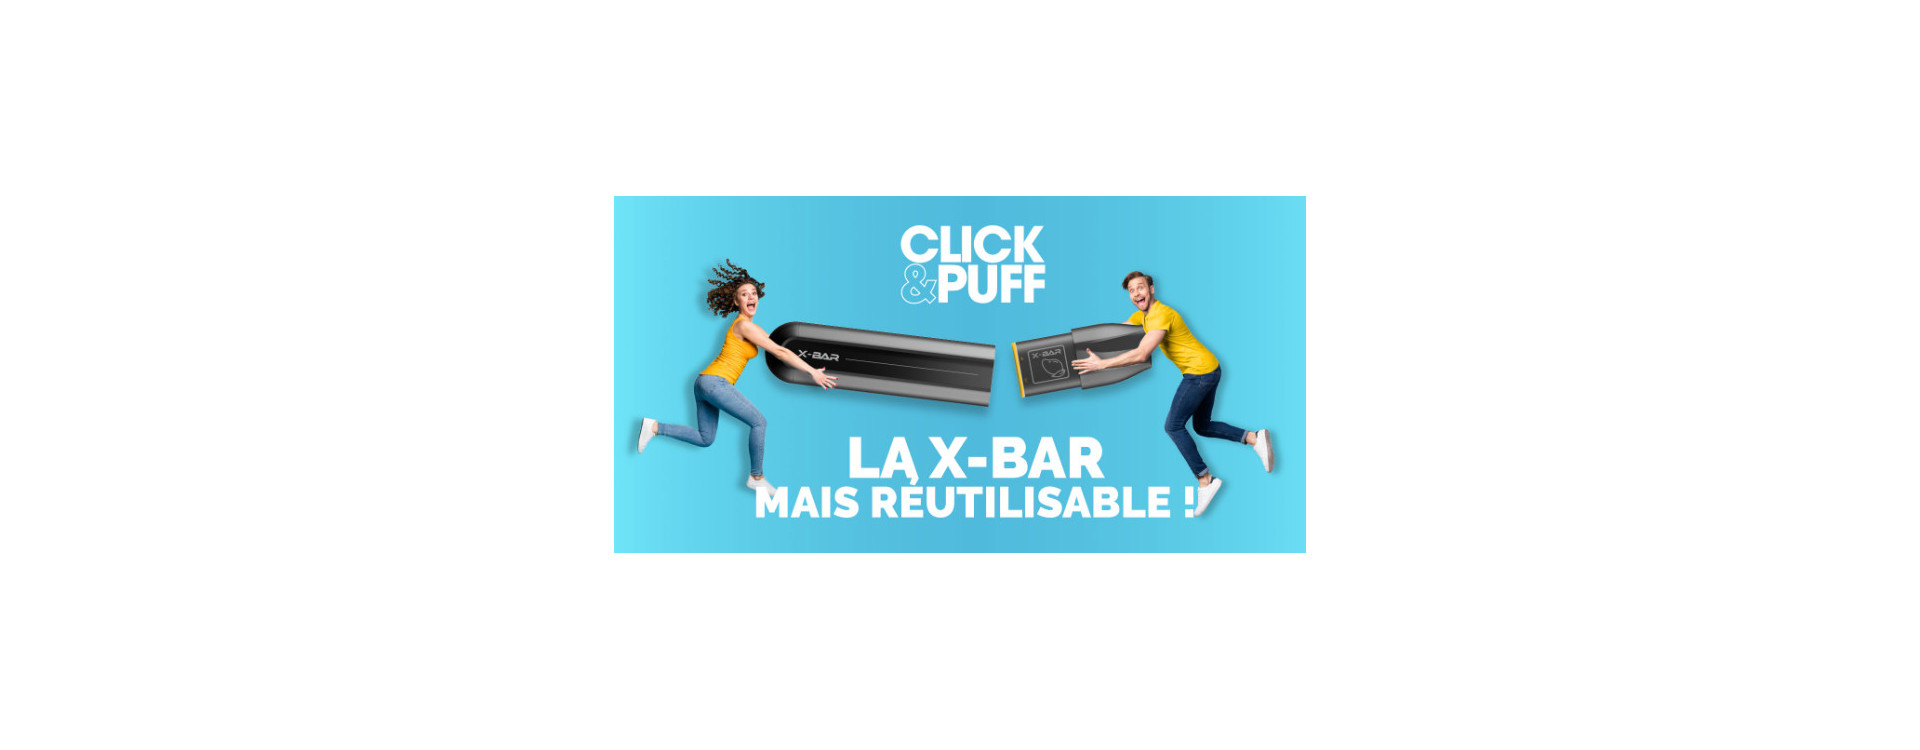 TEST - Revue du X-BAR Click & Puff de chez French Lab | Fonctionnement, Points positifs, Design & Packaging